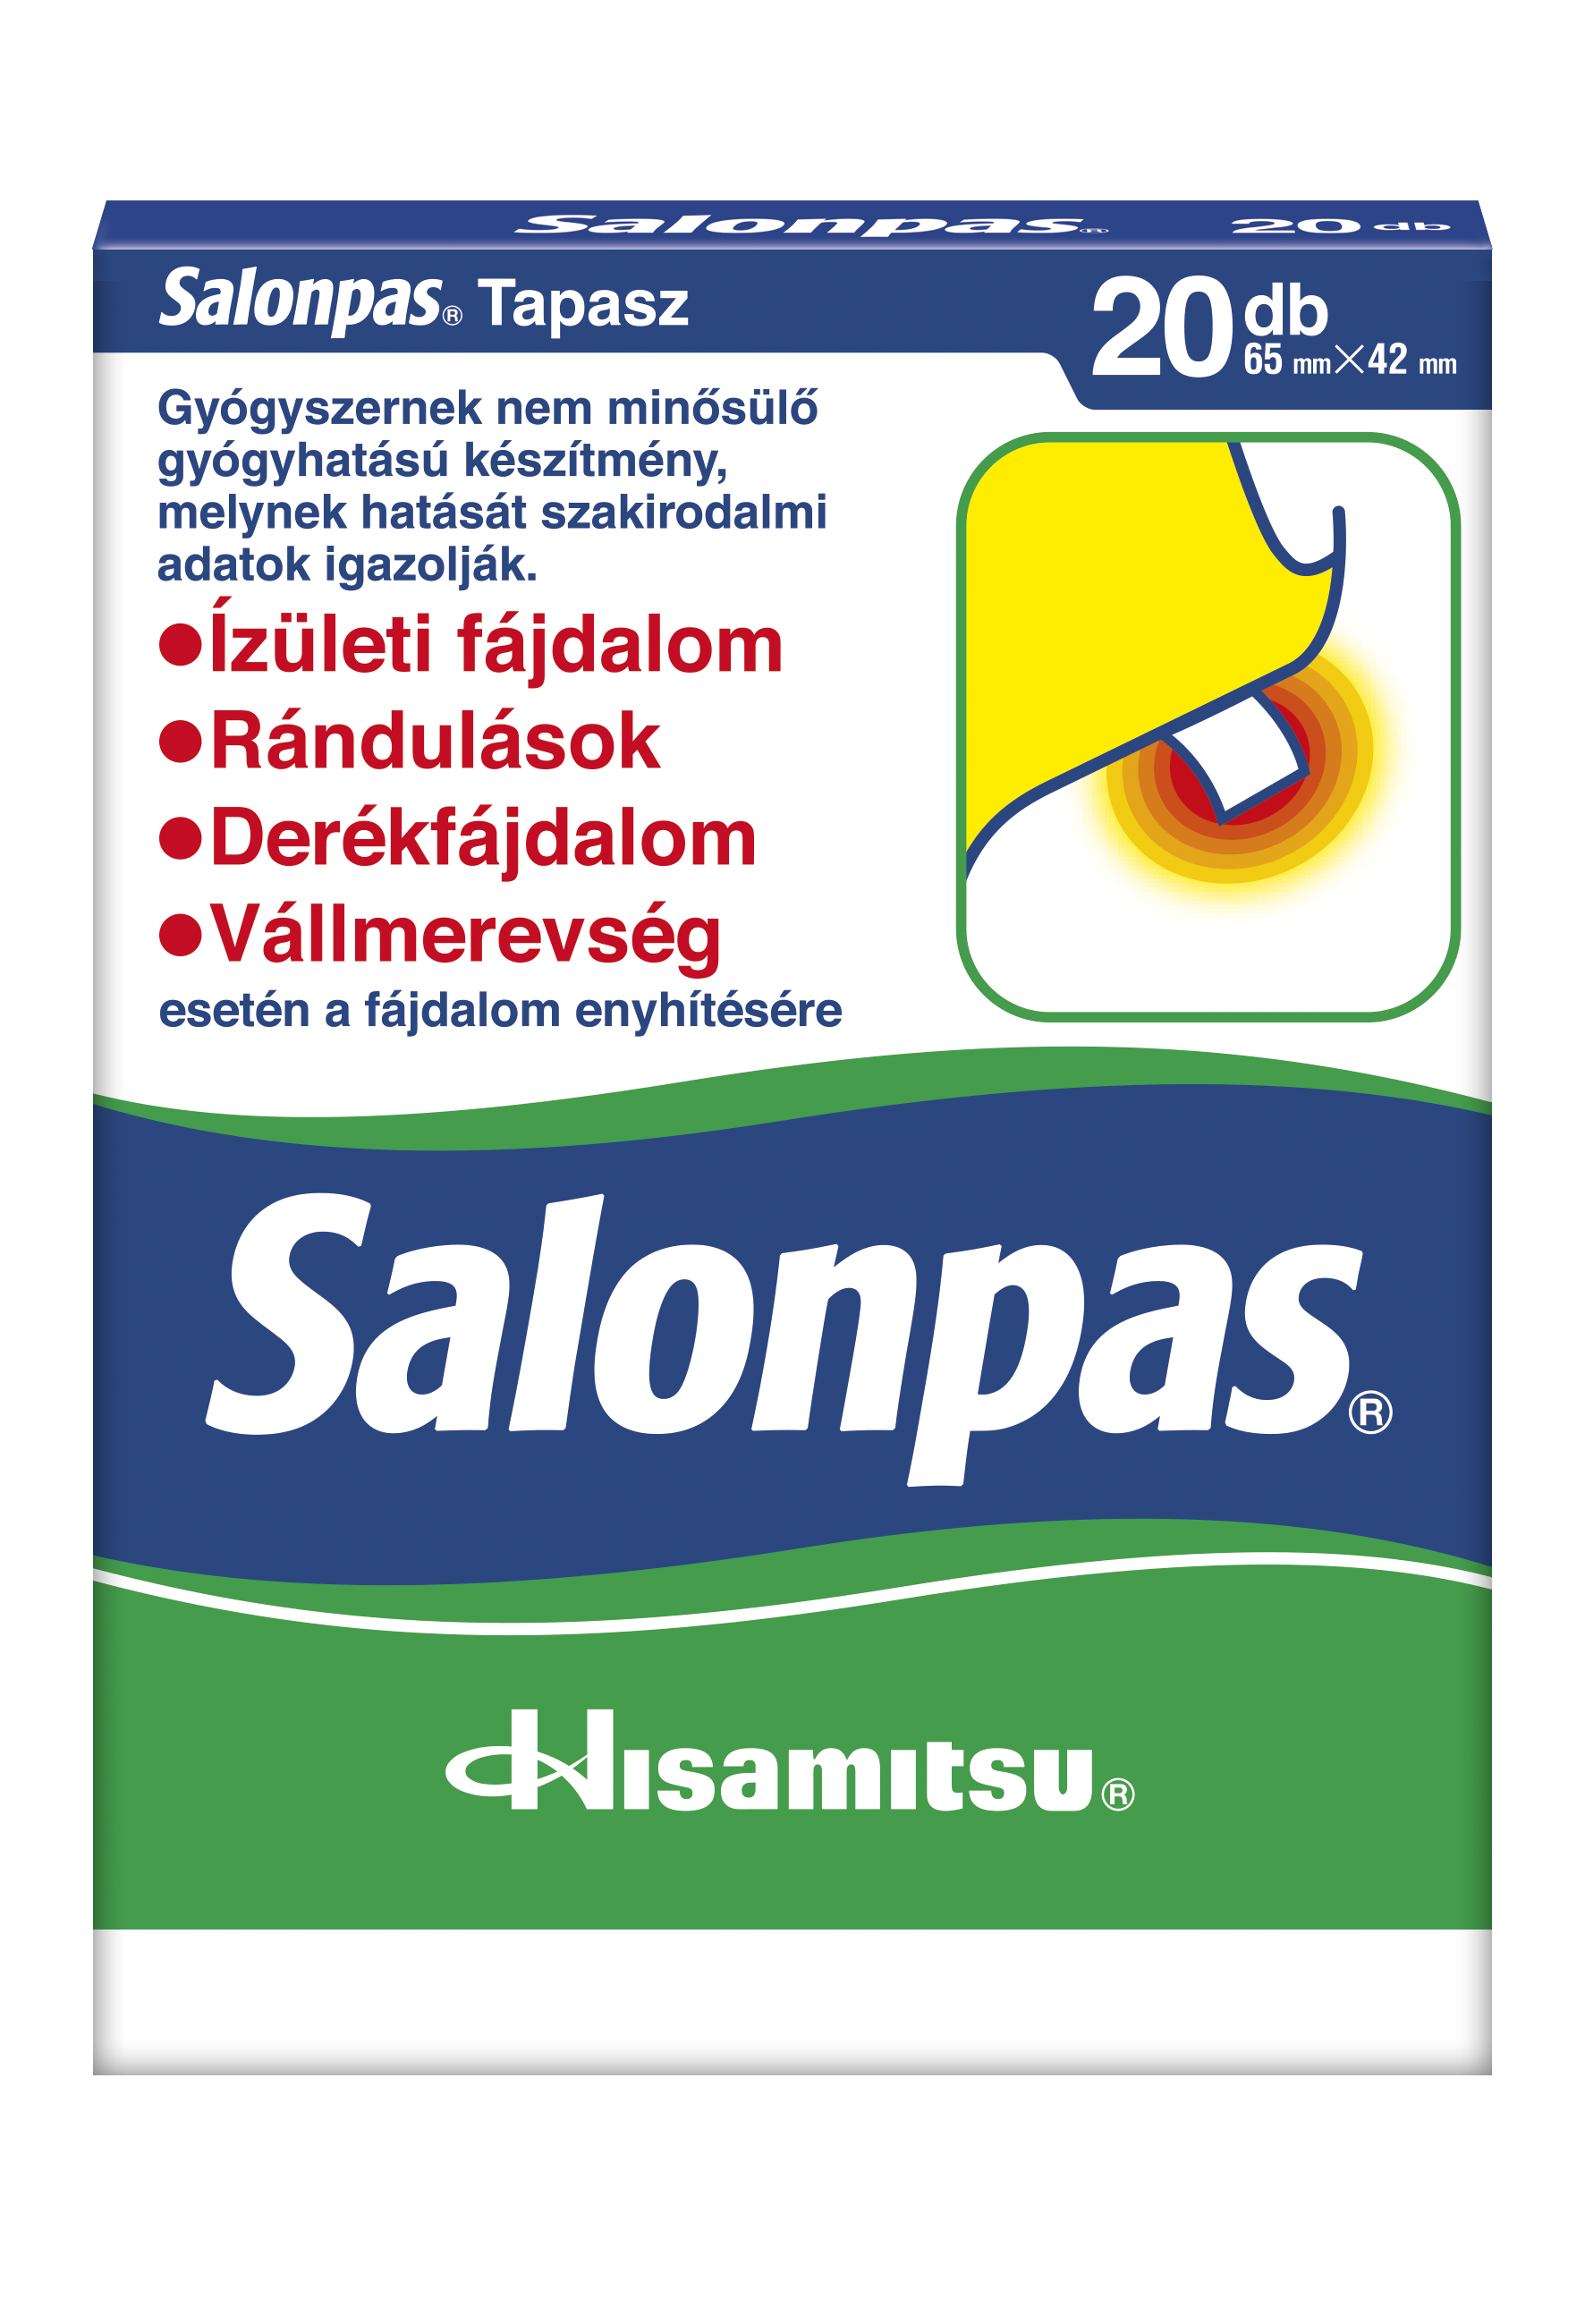 Salonpas tapasz (20 db) - Salonpas japán fájdalomcsillapítószer